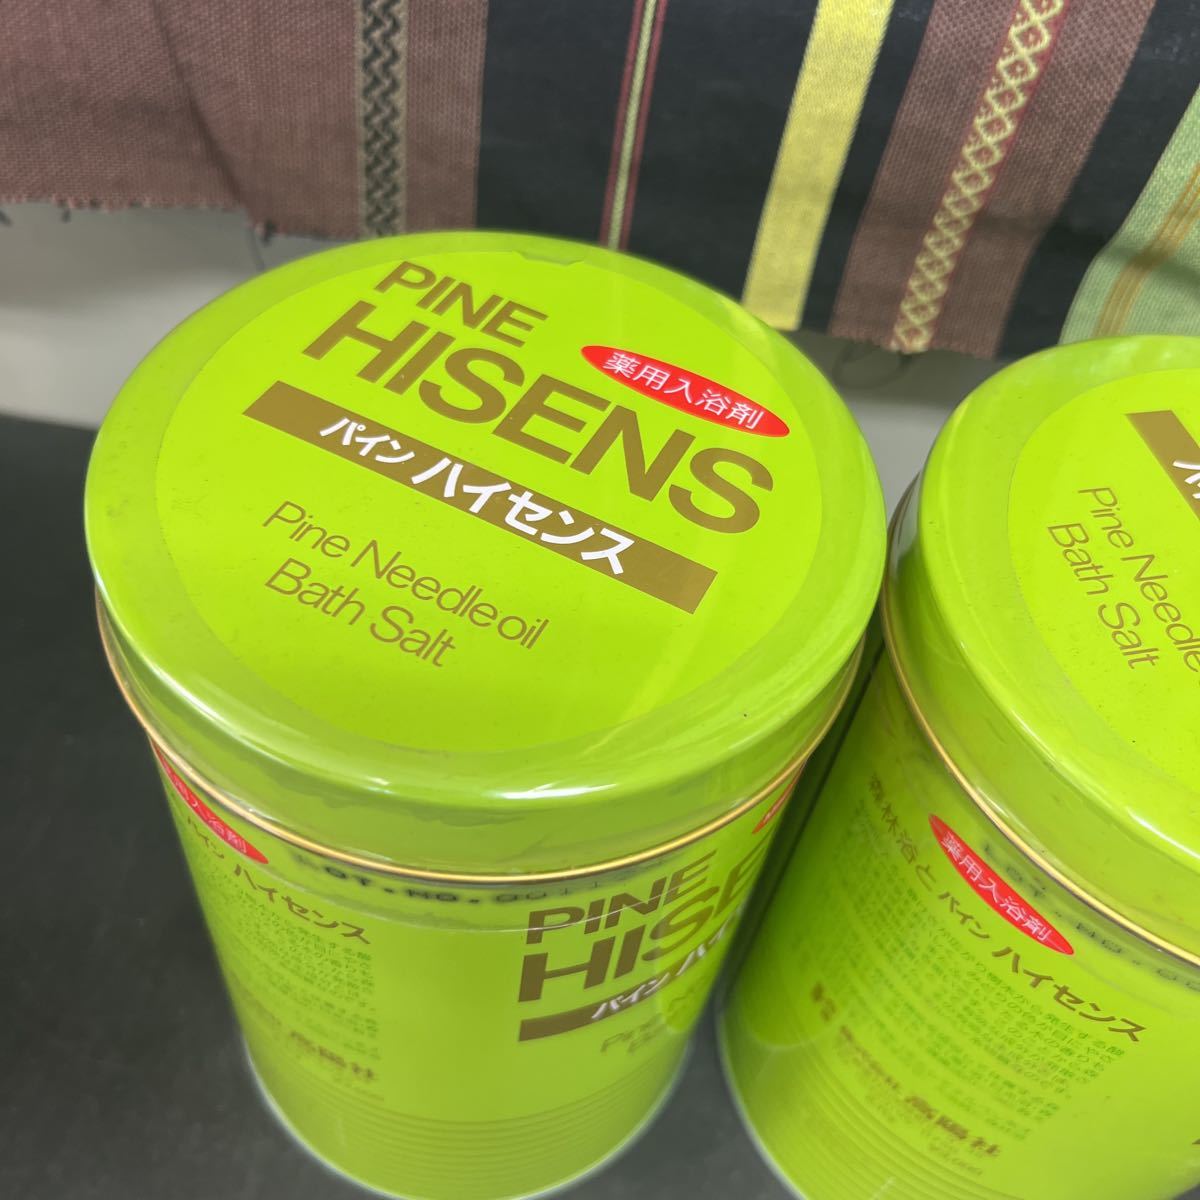 t11-144 高陽社 薬用入浴剤 パインハイセンス PINE HISENS 松の香り 若葉色 2.1kg 2点まとめて 保管品(入浴剤